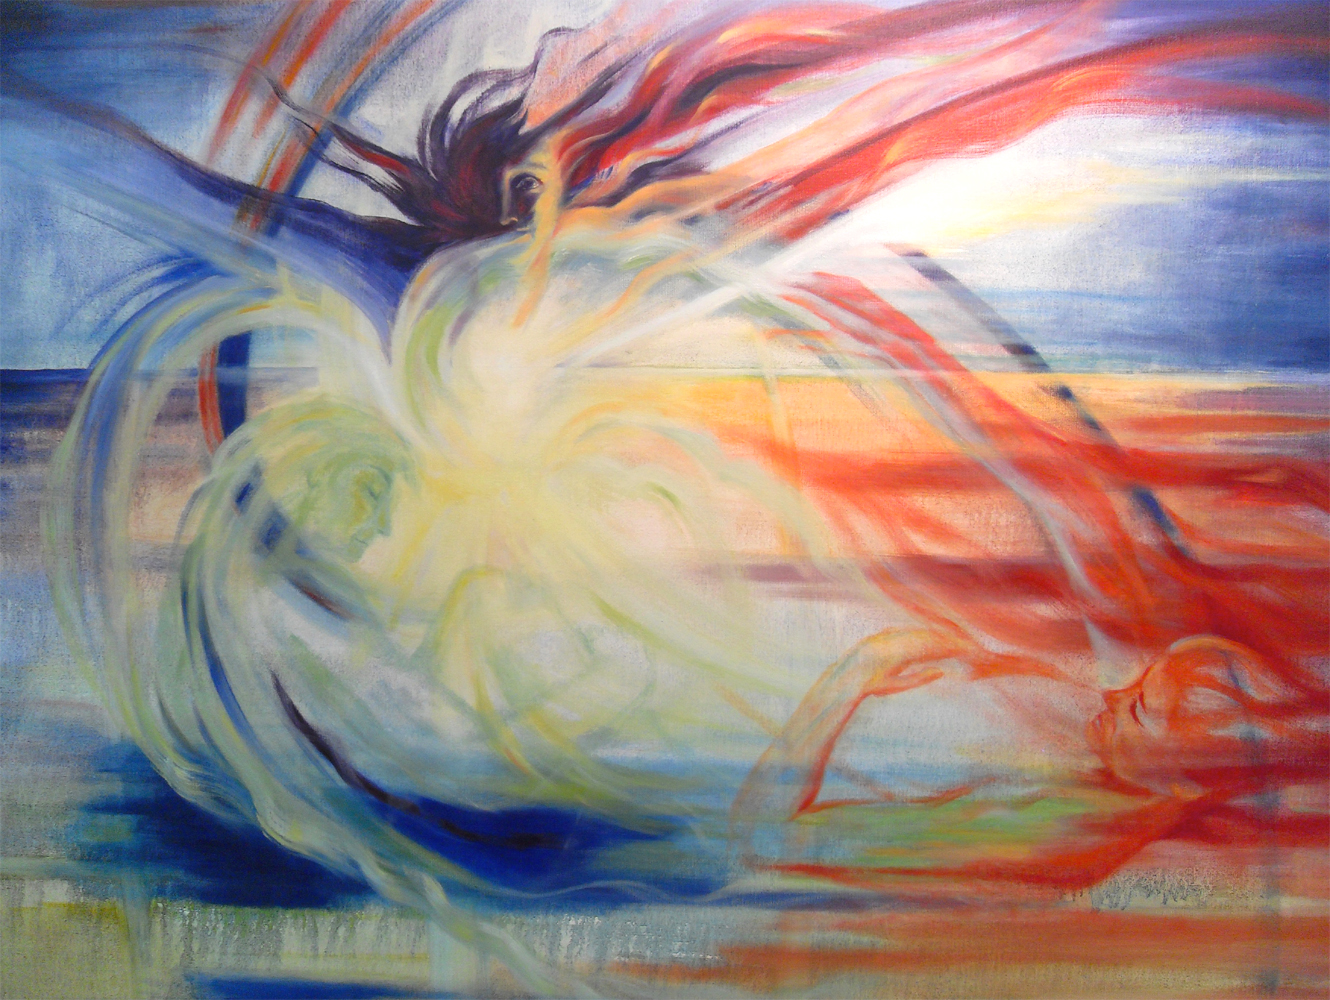 Juanita Yoder painting. Birth of Seraphim.